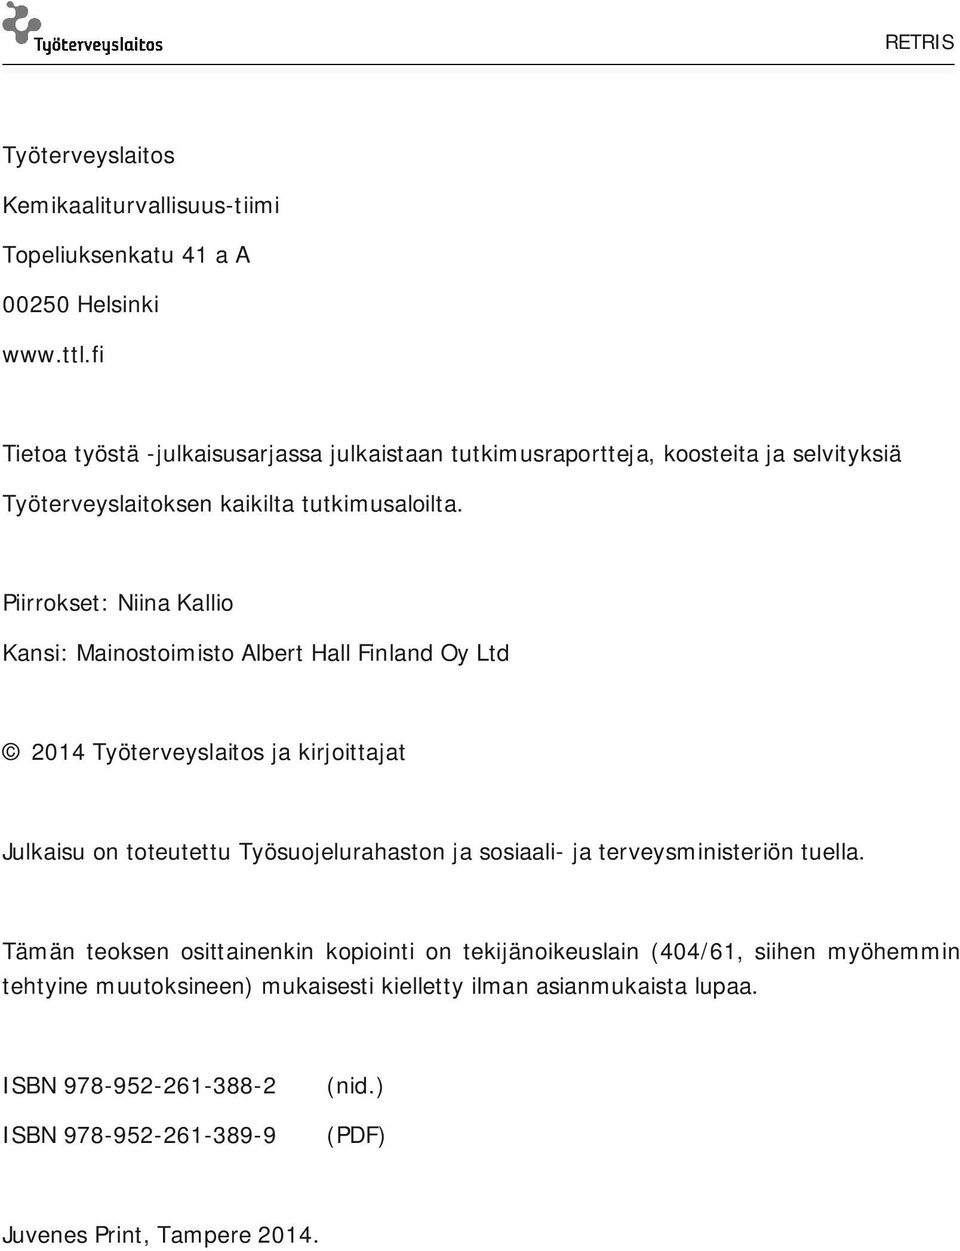 Piirrokset: Niina Kallio Kansi: Mainostoimisto Albert Hall Finland Oy Ltd 2014 Työterveyslaitos ja kirjoittajat Julkaisu on toteutettu Työsuojelurahaston ja sosiaali-